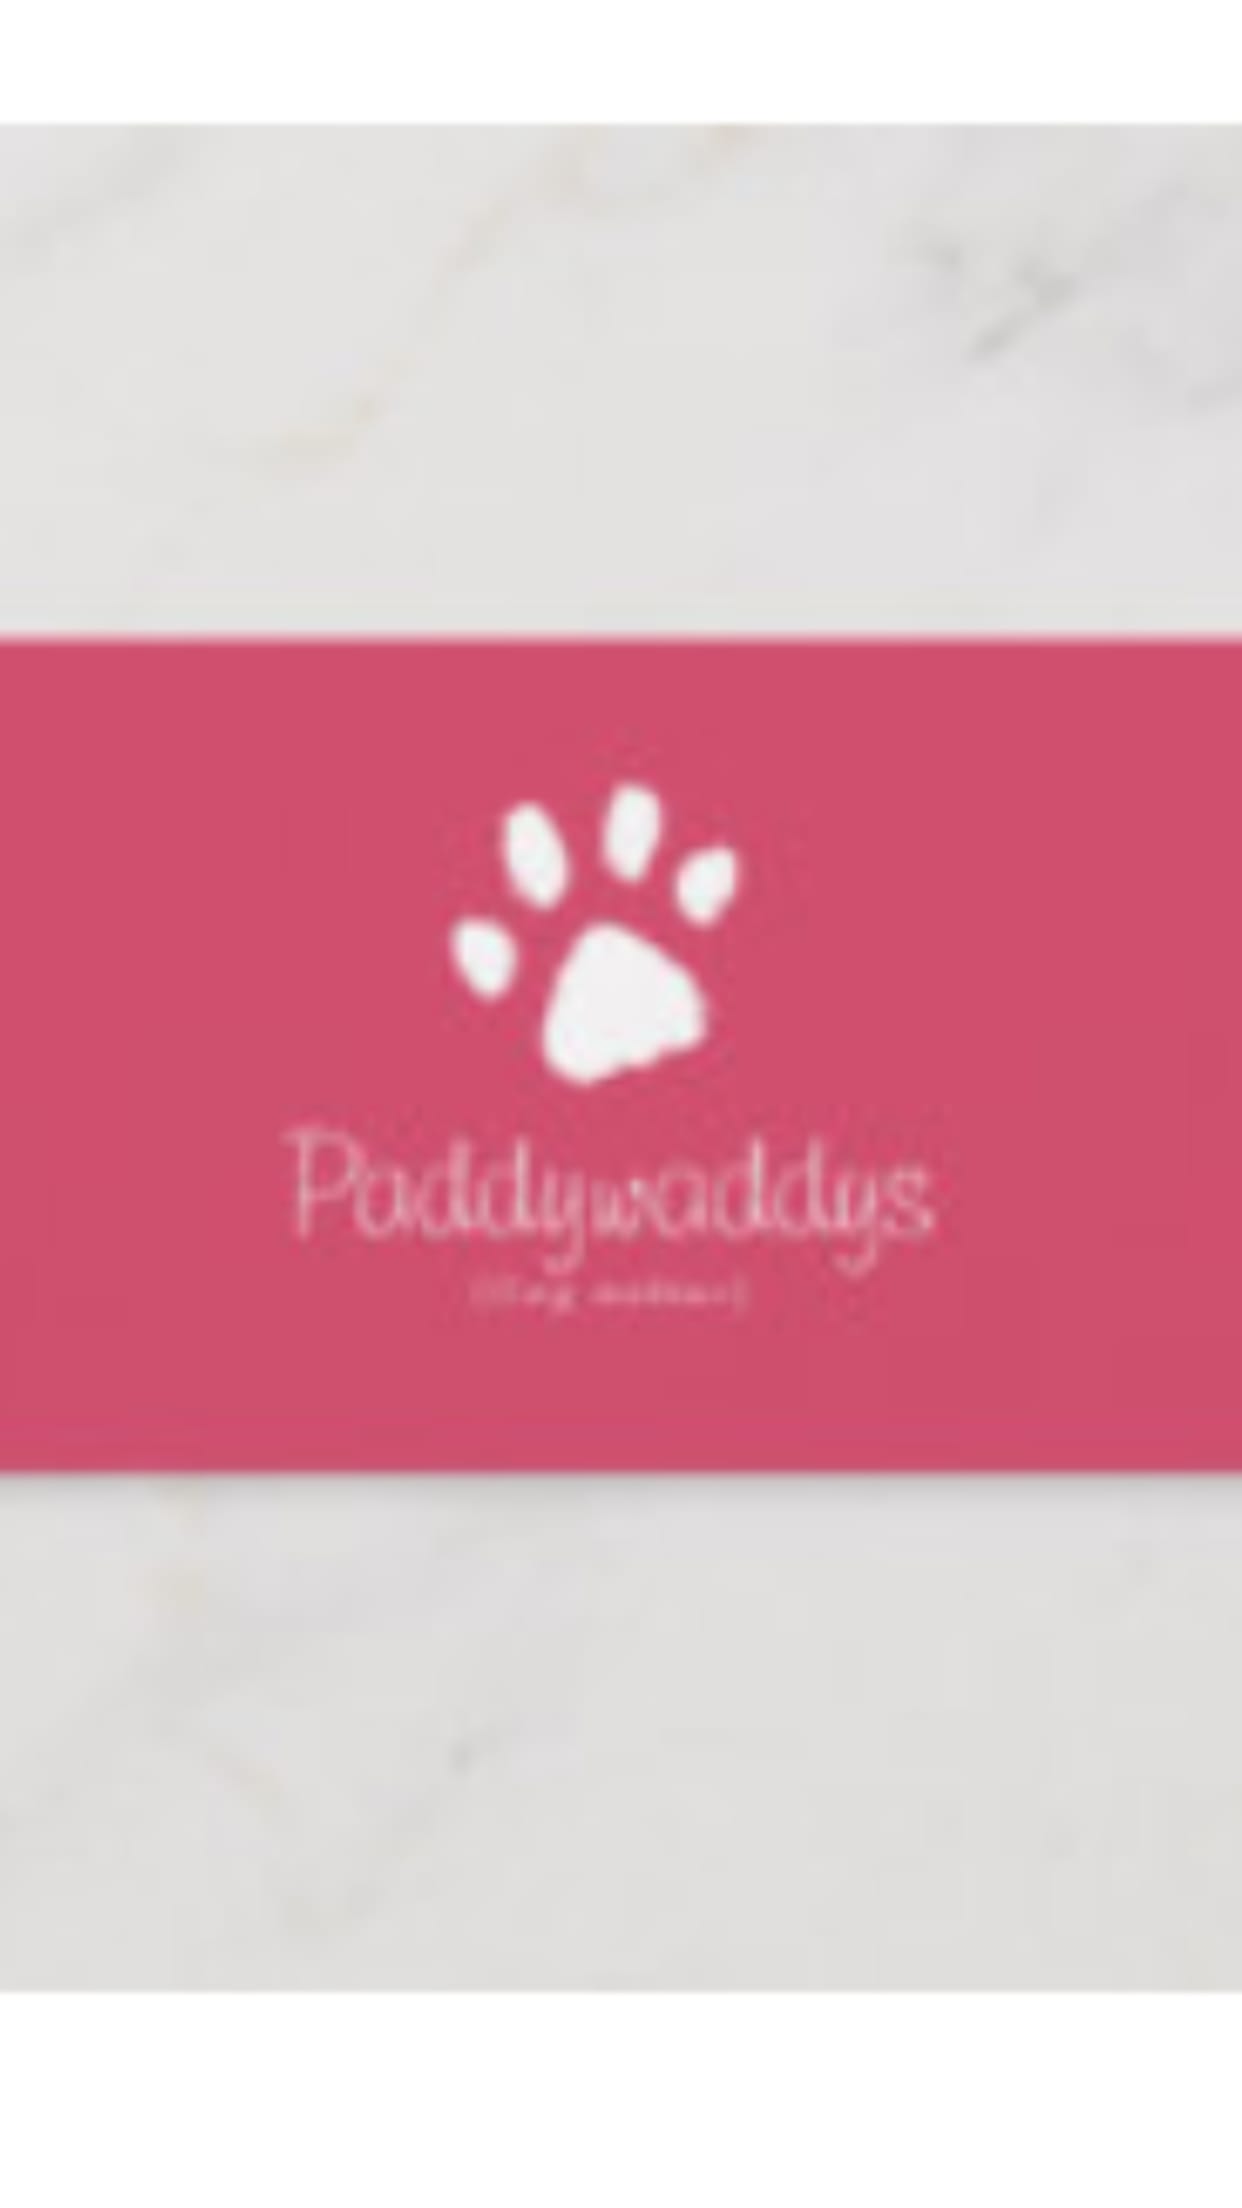 Paddywaddys